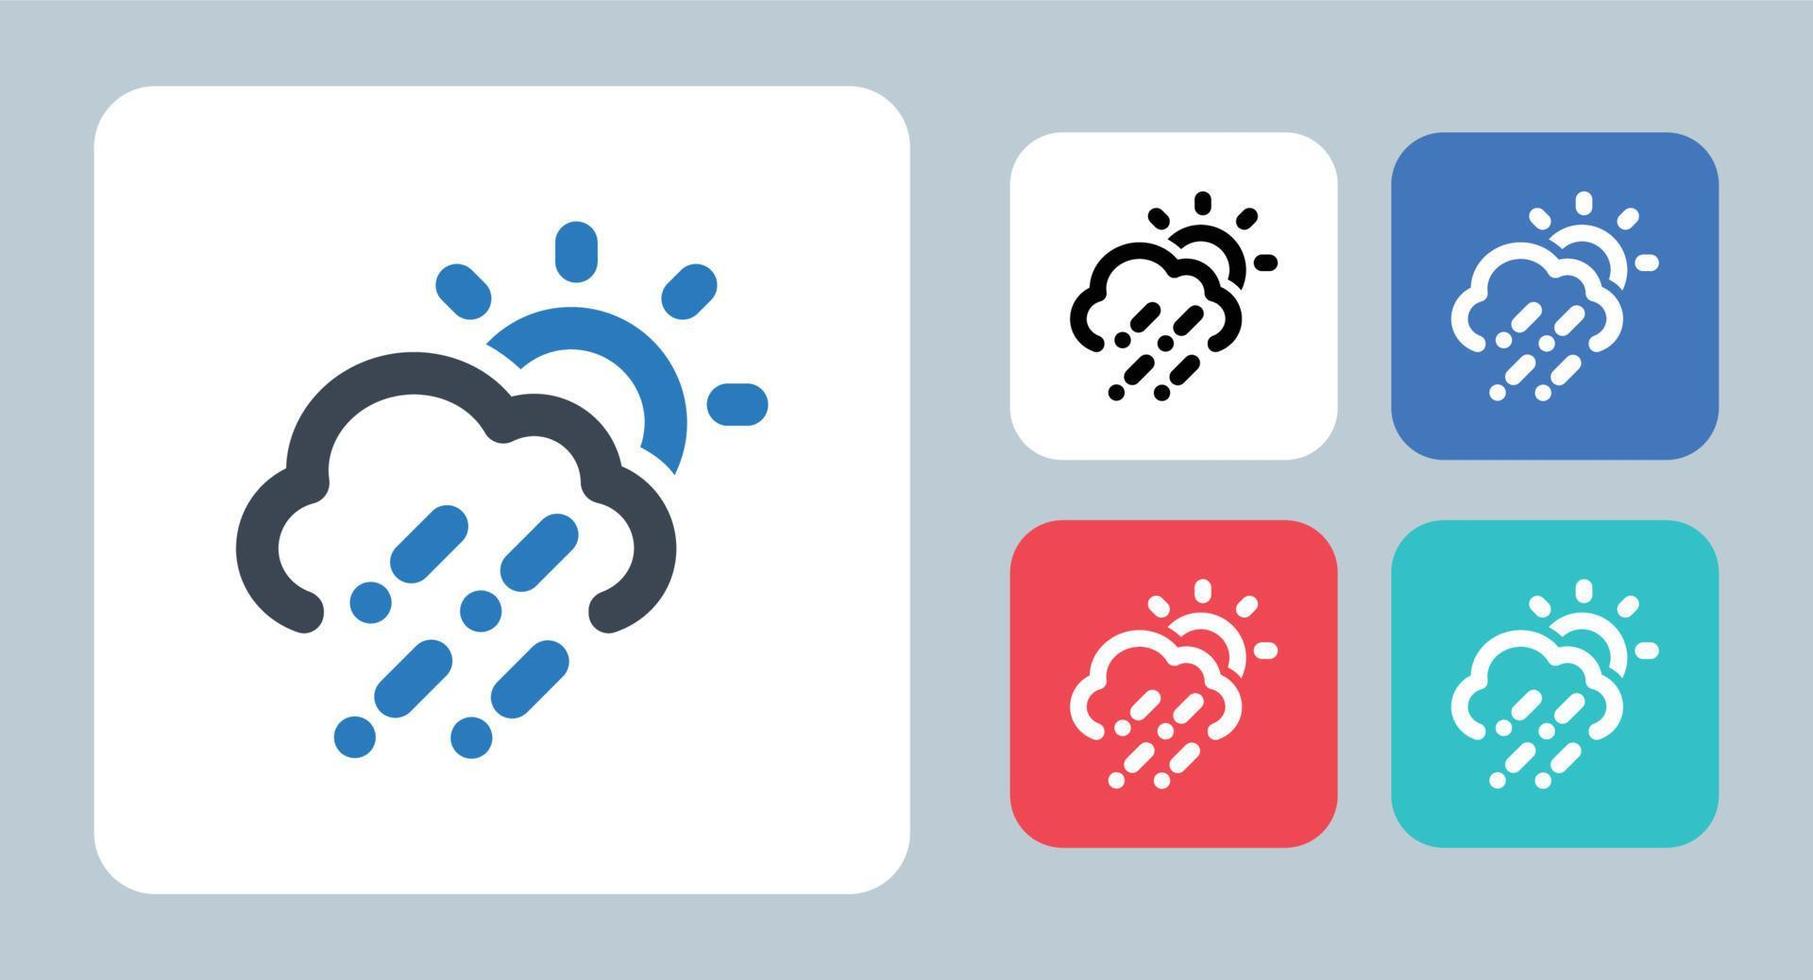 icona grandine - illustrazione vettoriale. grandine, pietre, pioggia, tempesta, nuvola, tempo, previsione, sole, giorno, clima, linea, contorno, piatto, icone. vettore